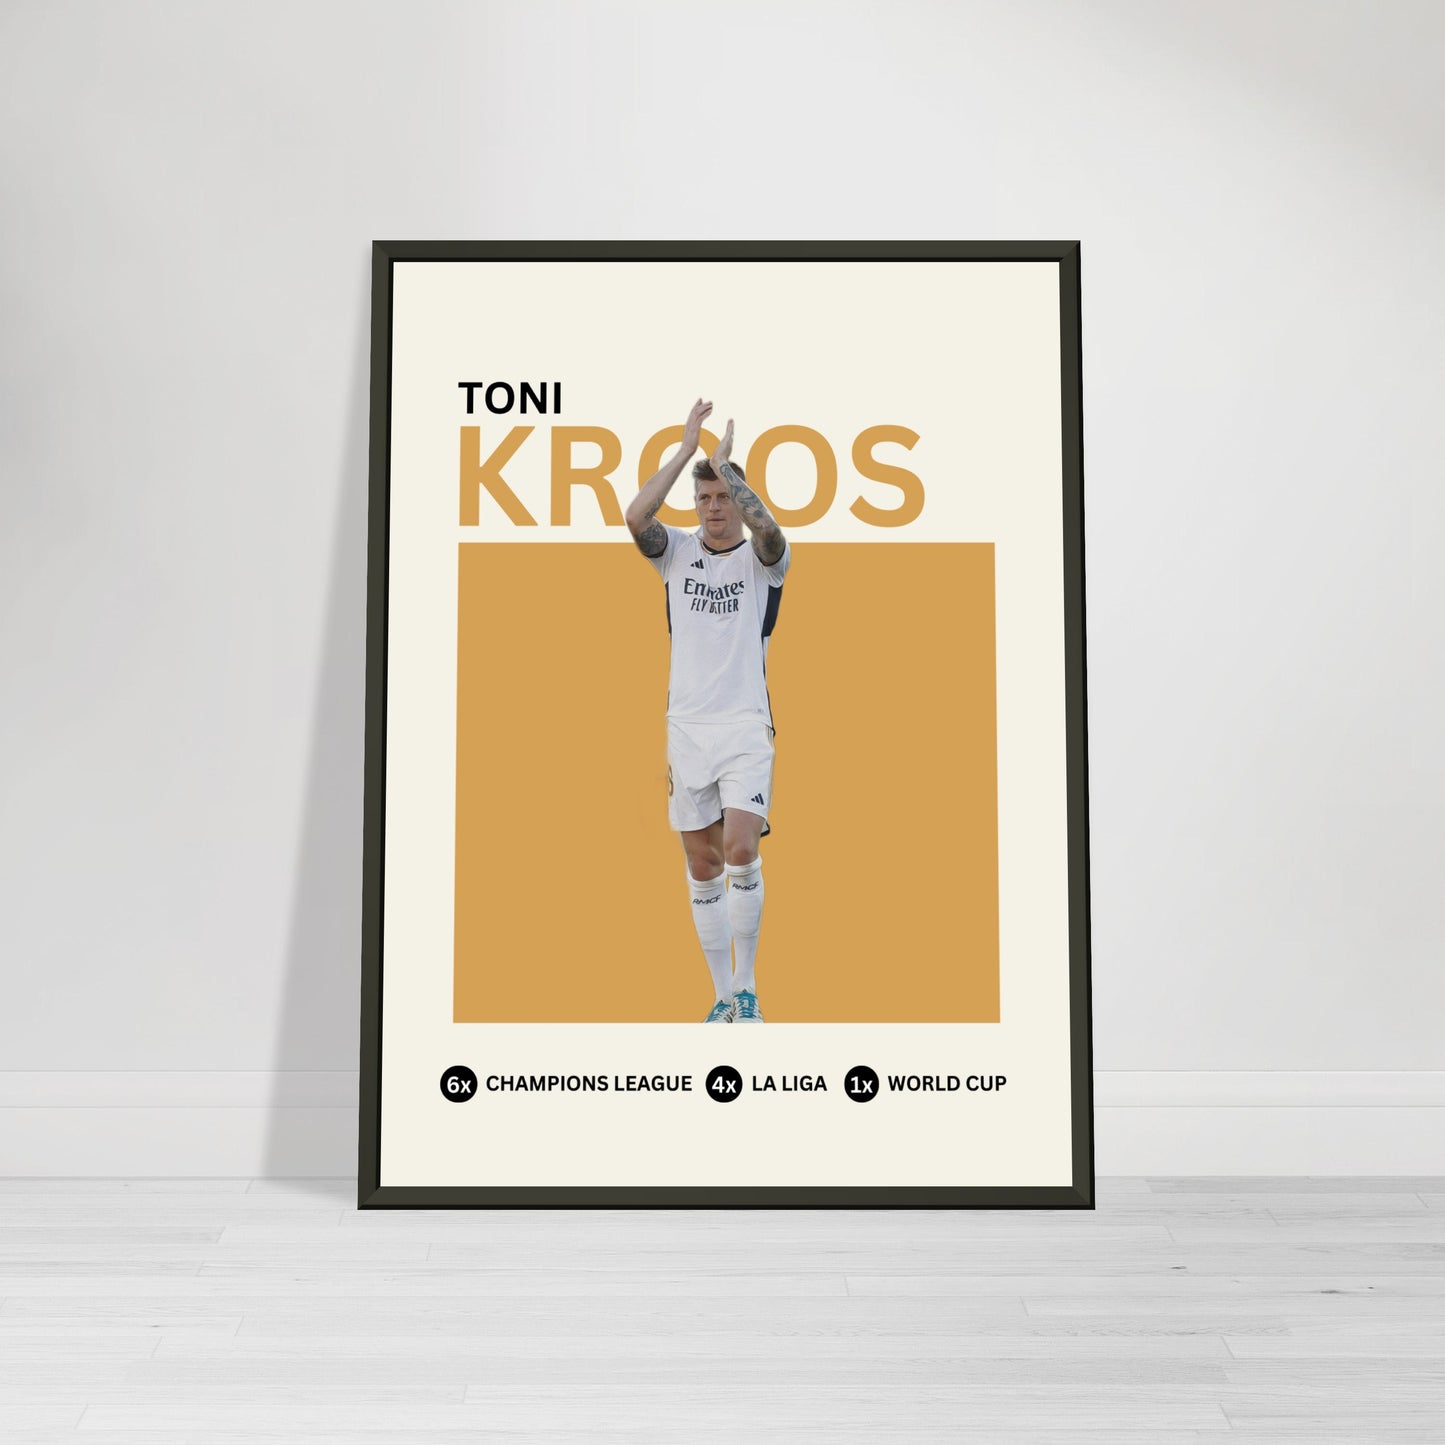 Toni Kroos career